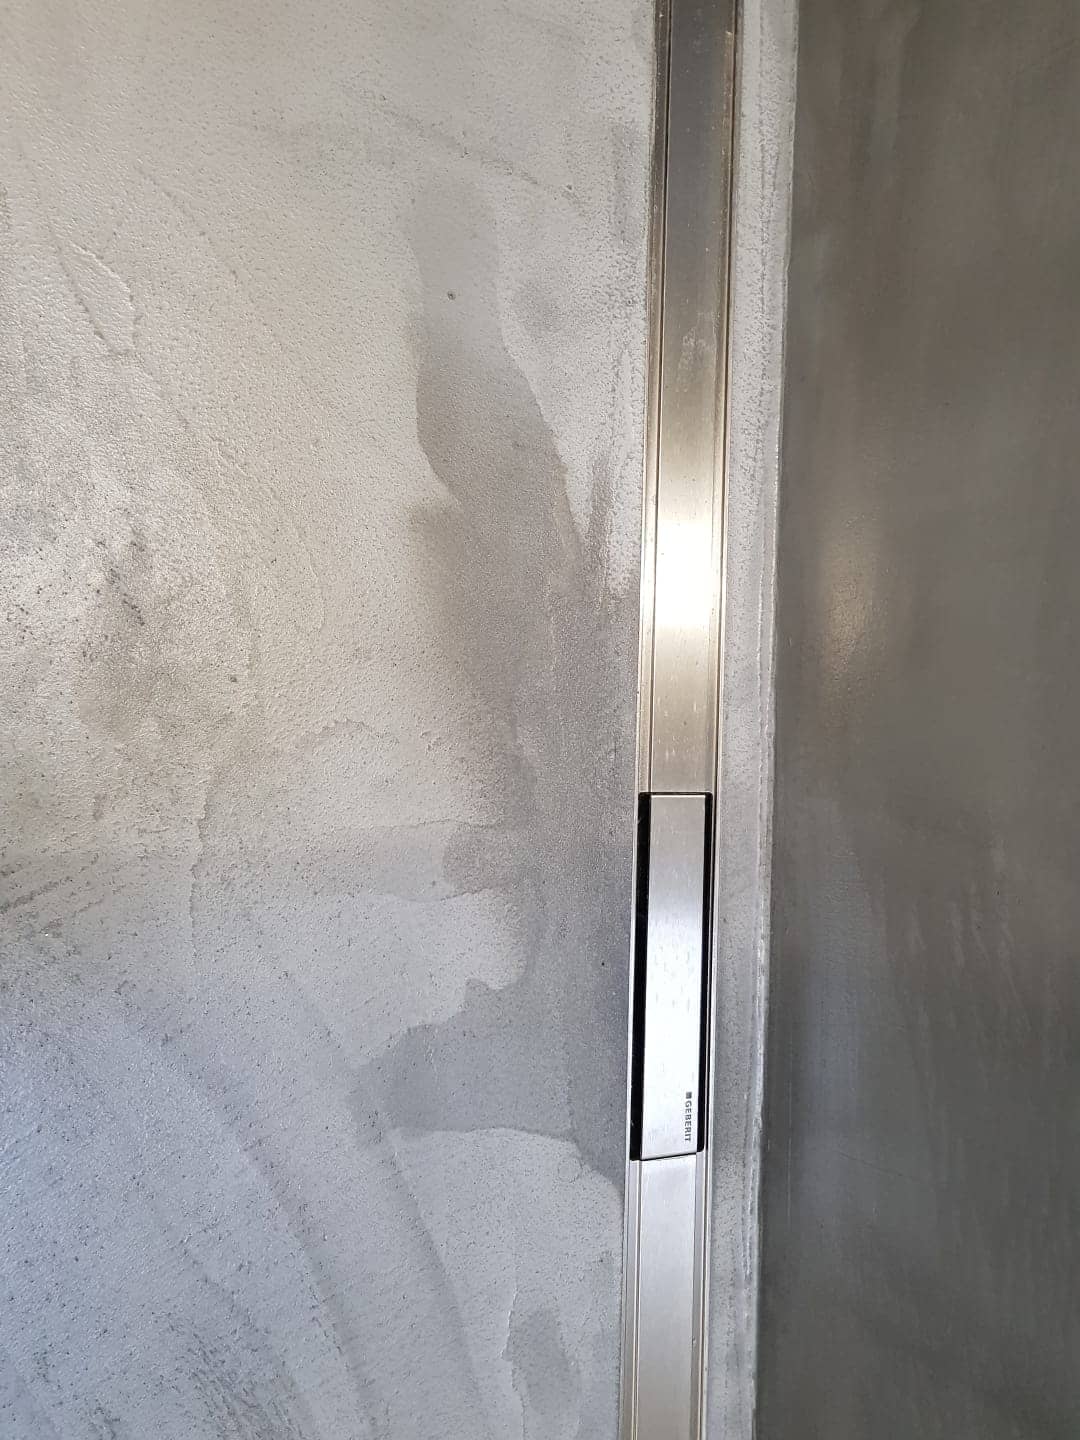   Microciment et humidité dans une douche